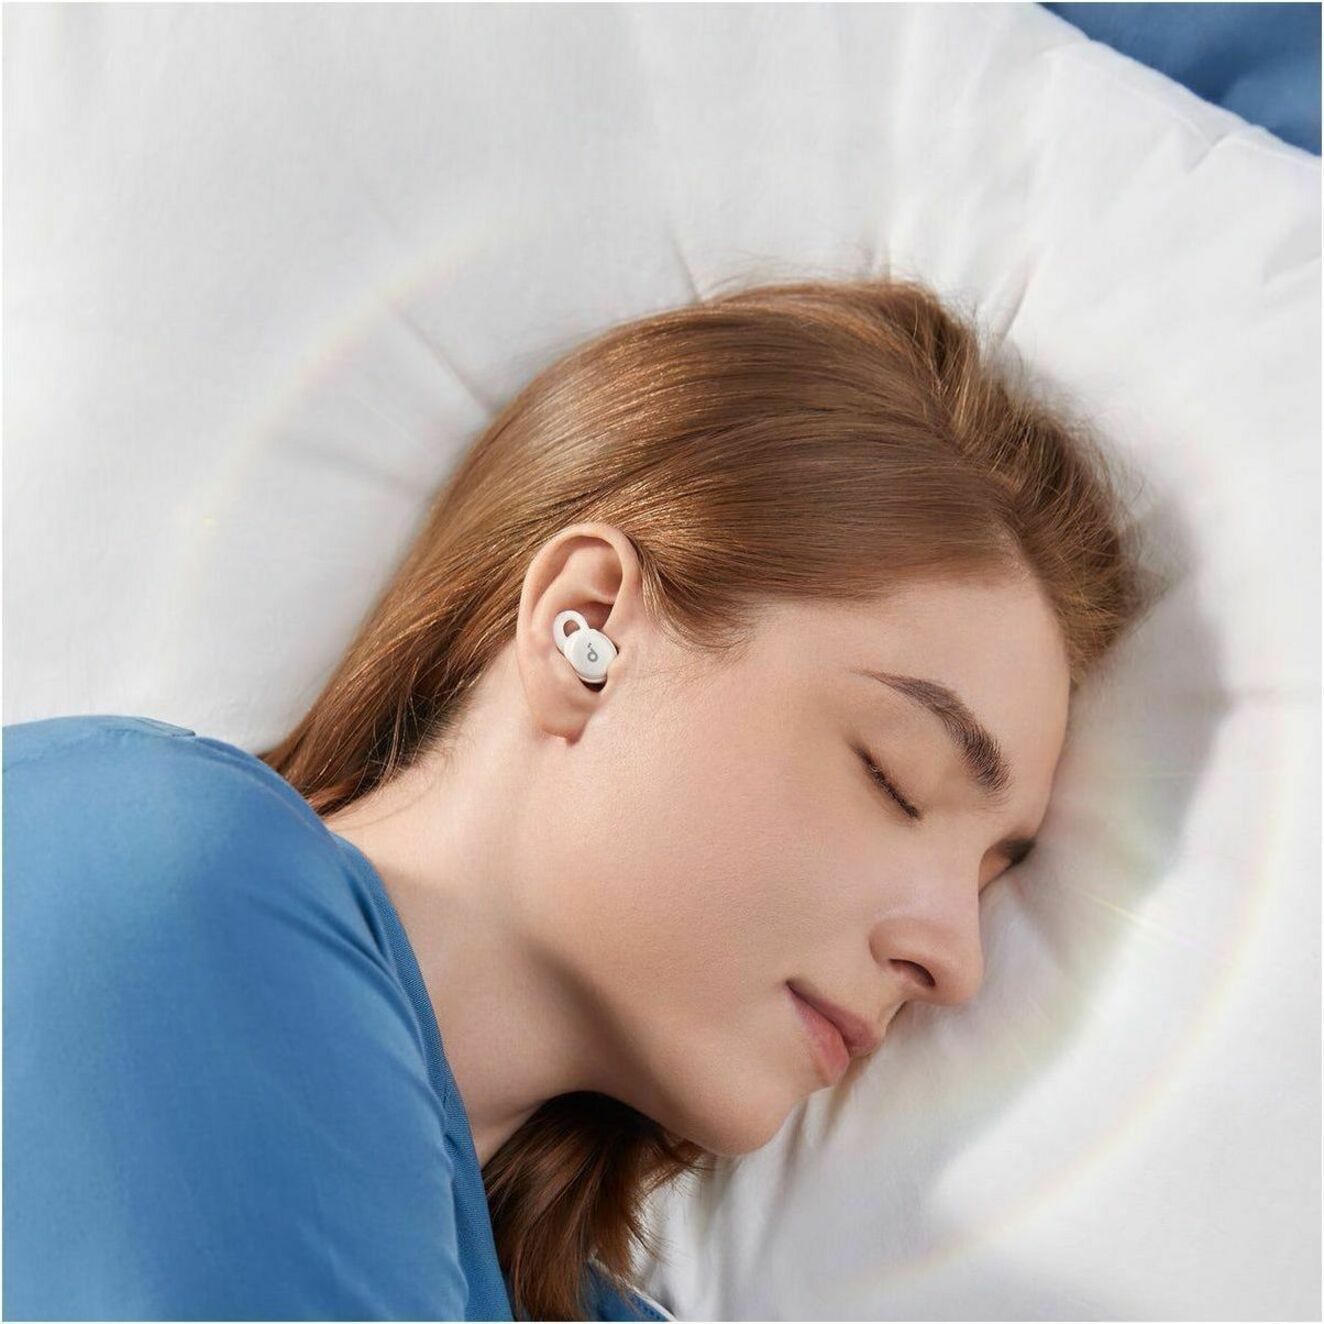 soundcore A6610Z21 Sleep A10 All-New Sleep Earbuds for Better Sleep Bequem Leicht Bluetooth 5.2